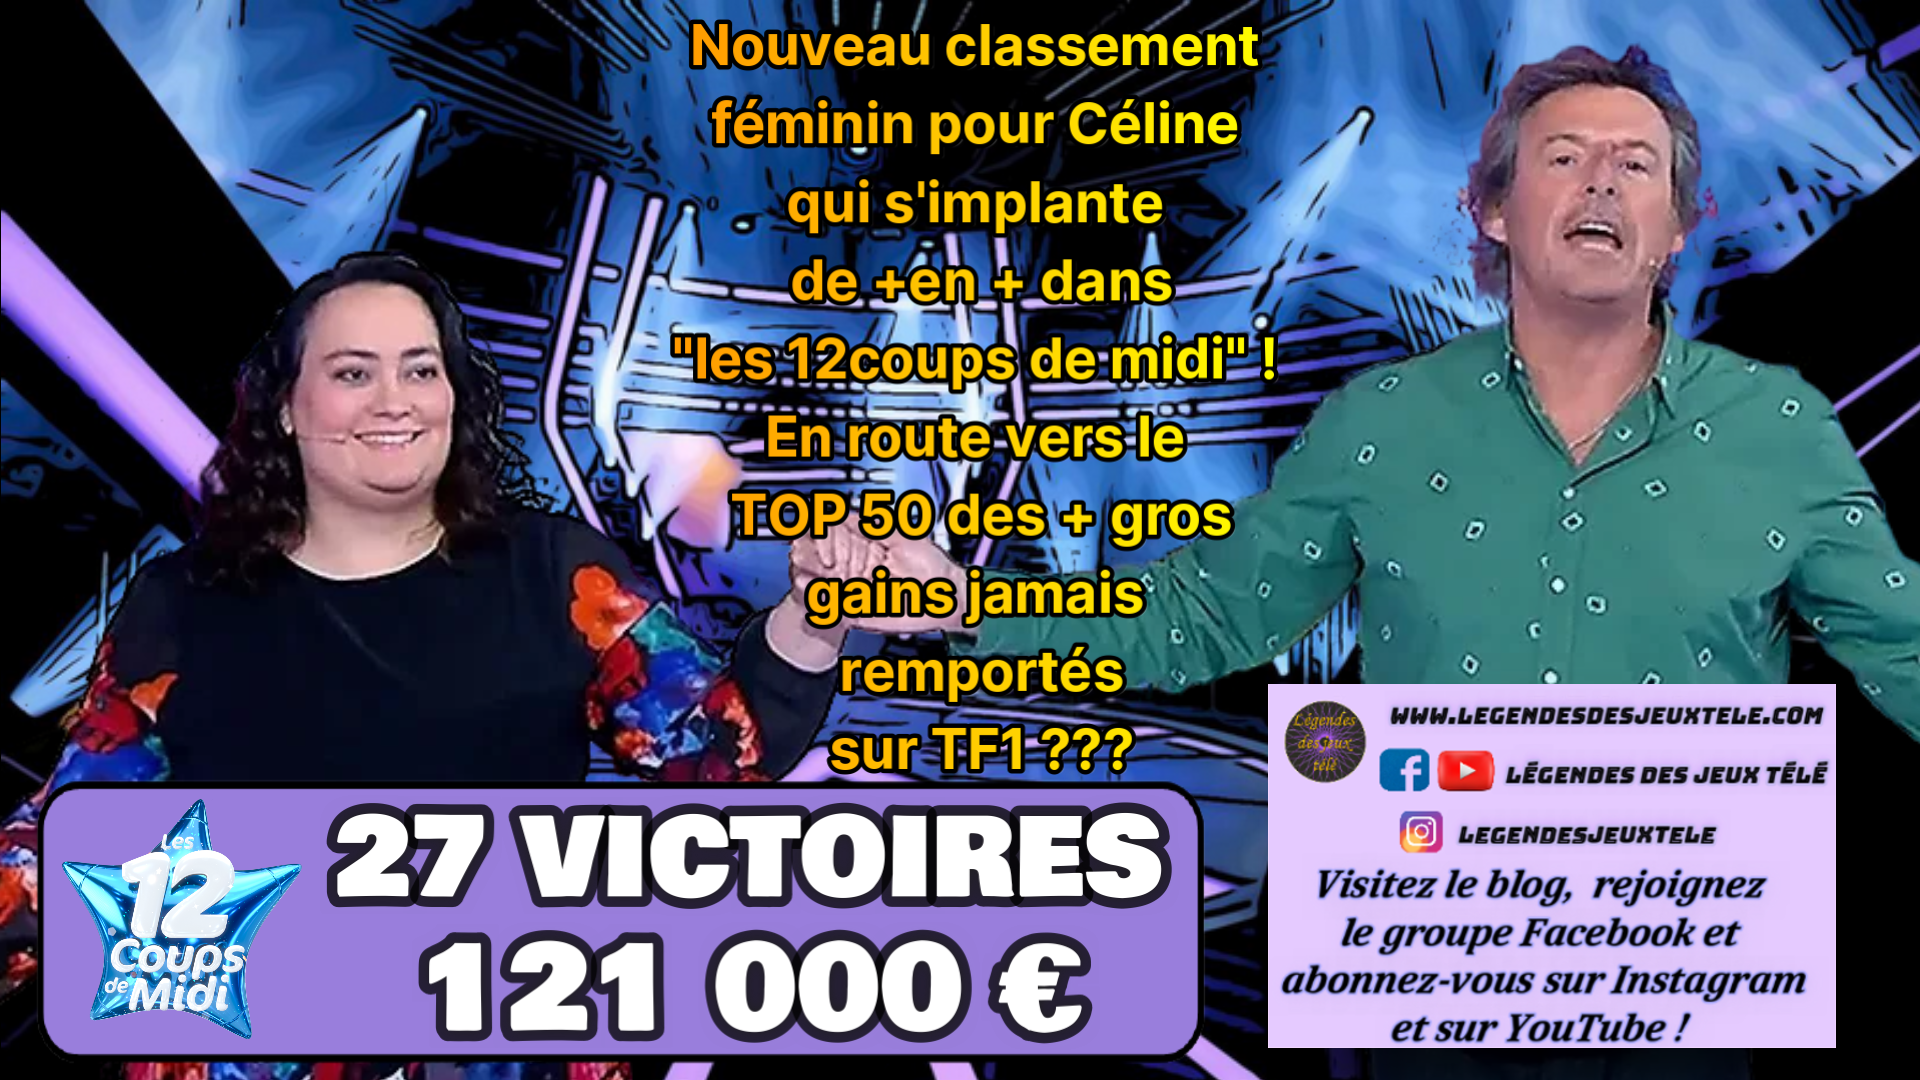 Avec 121 000 € et en dépassant donc les 110 000 €, Céline atteint un premier classement associant les gains dans un jeu TV grâce aux « douze coups de midi » !!!